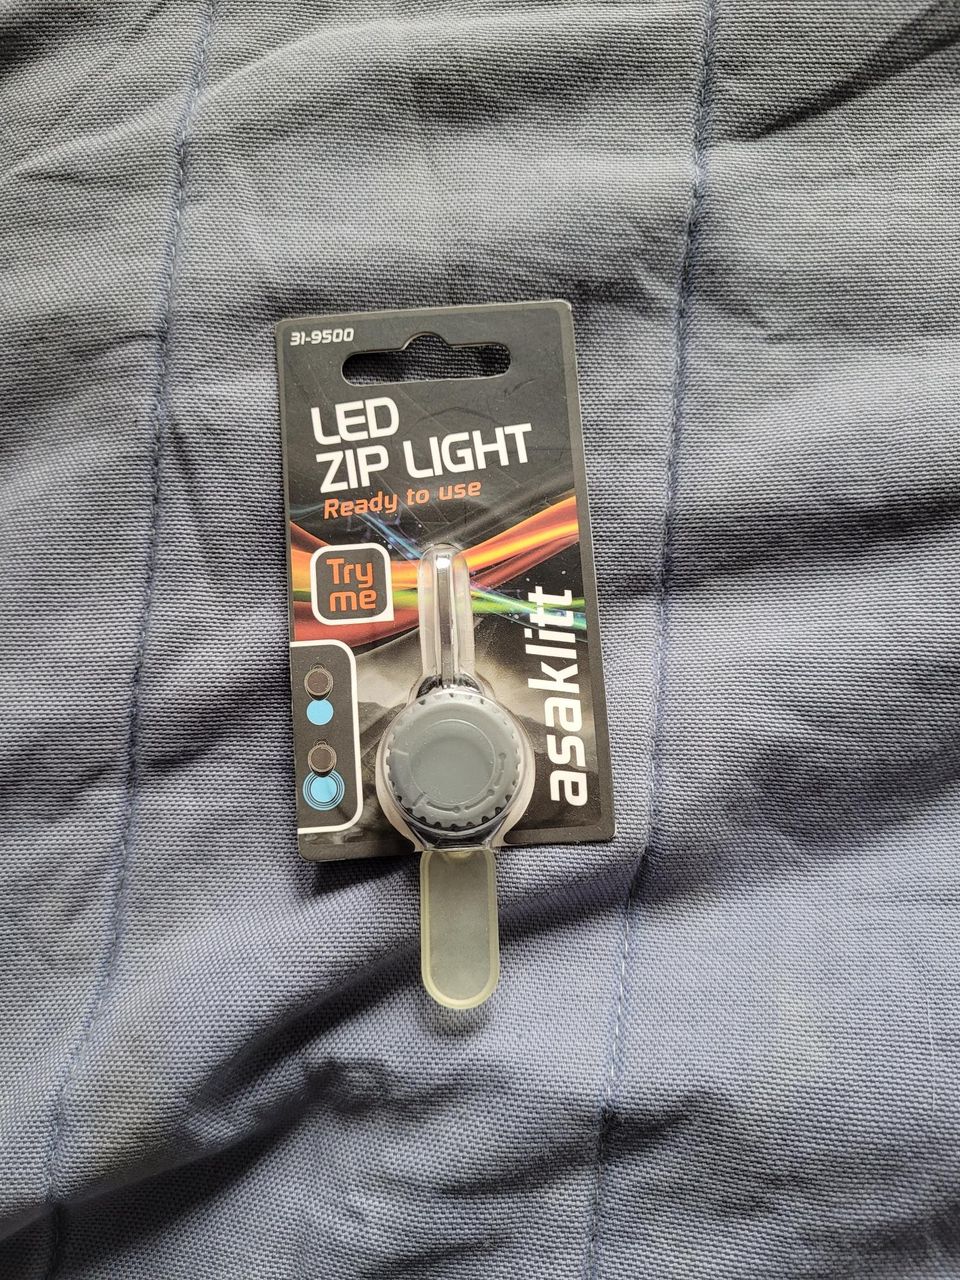 Asaklitt LED Zip Light